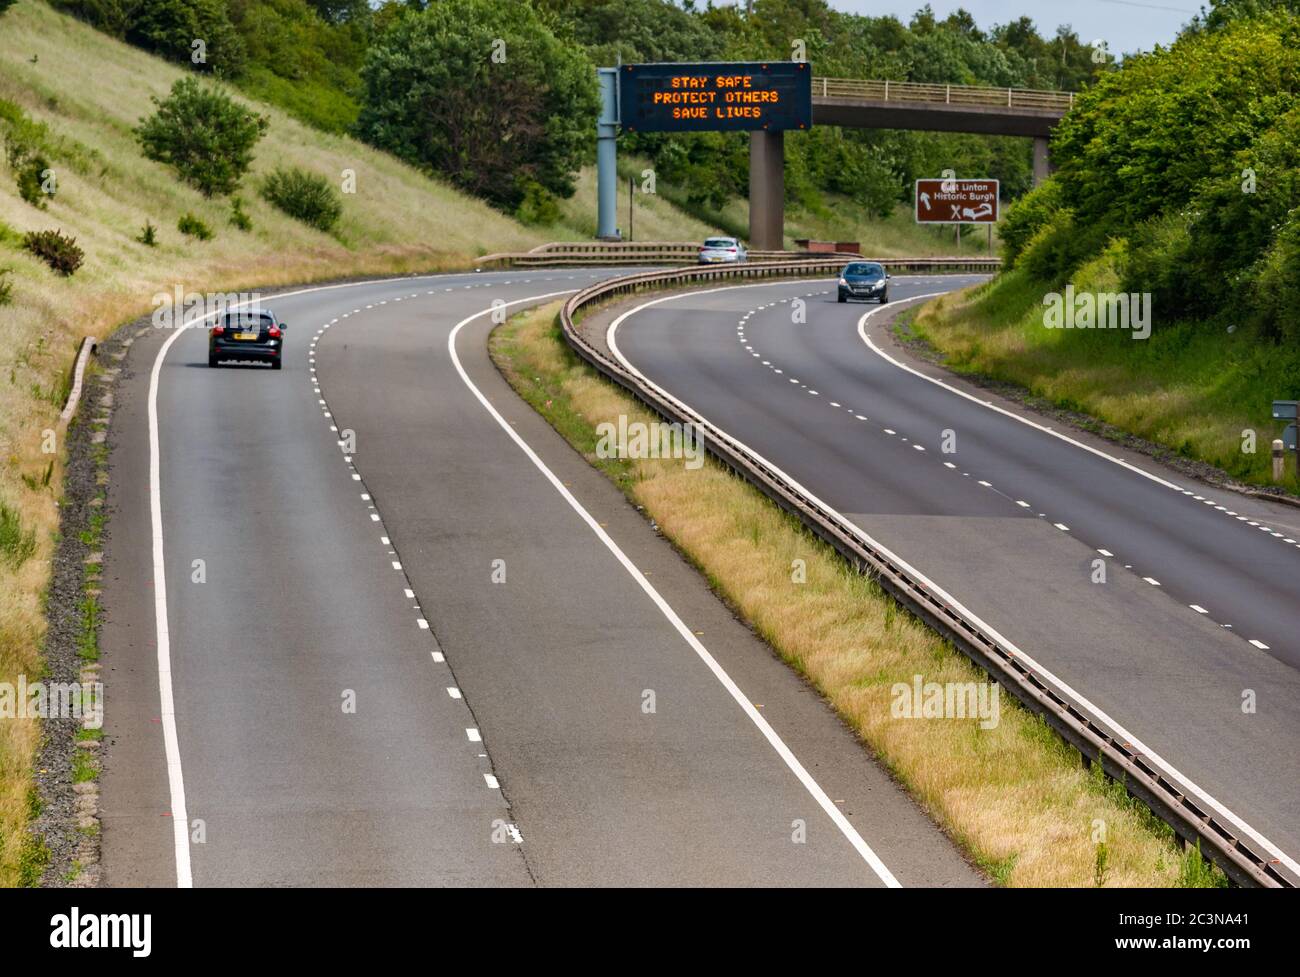 Traffico sulla A1 con il nuovo messaggio pandemico Covid-19 sul gantry 'Stay Safe Protect Others Save Lives', East Lothian, Scozia, Regno Unito Foto Stock